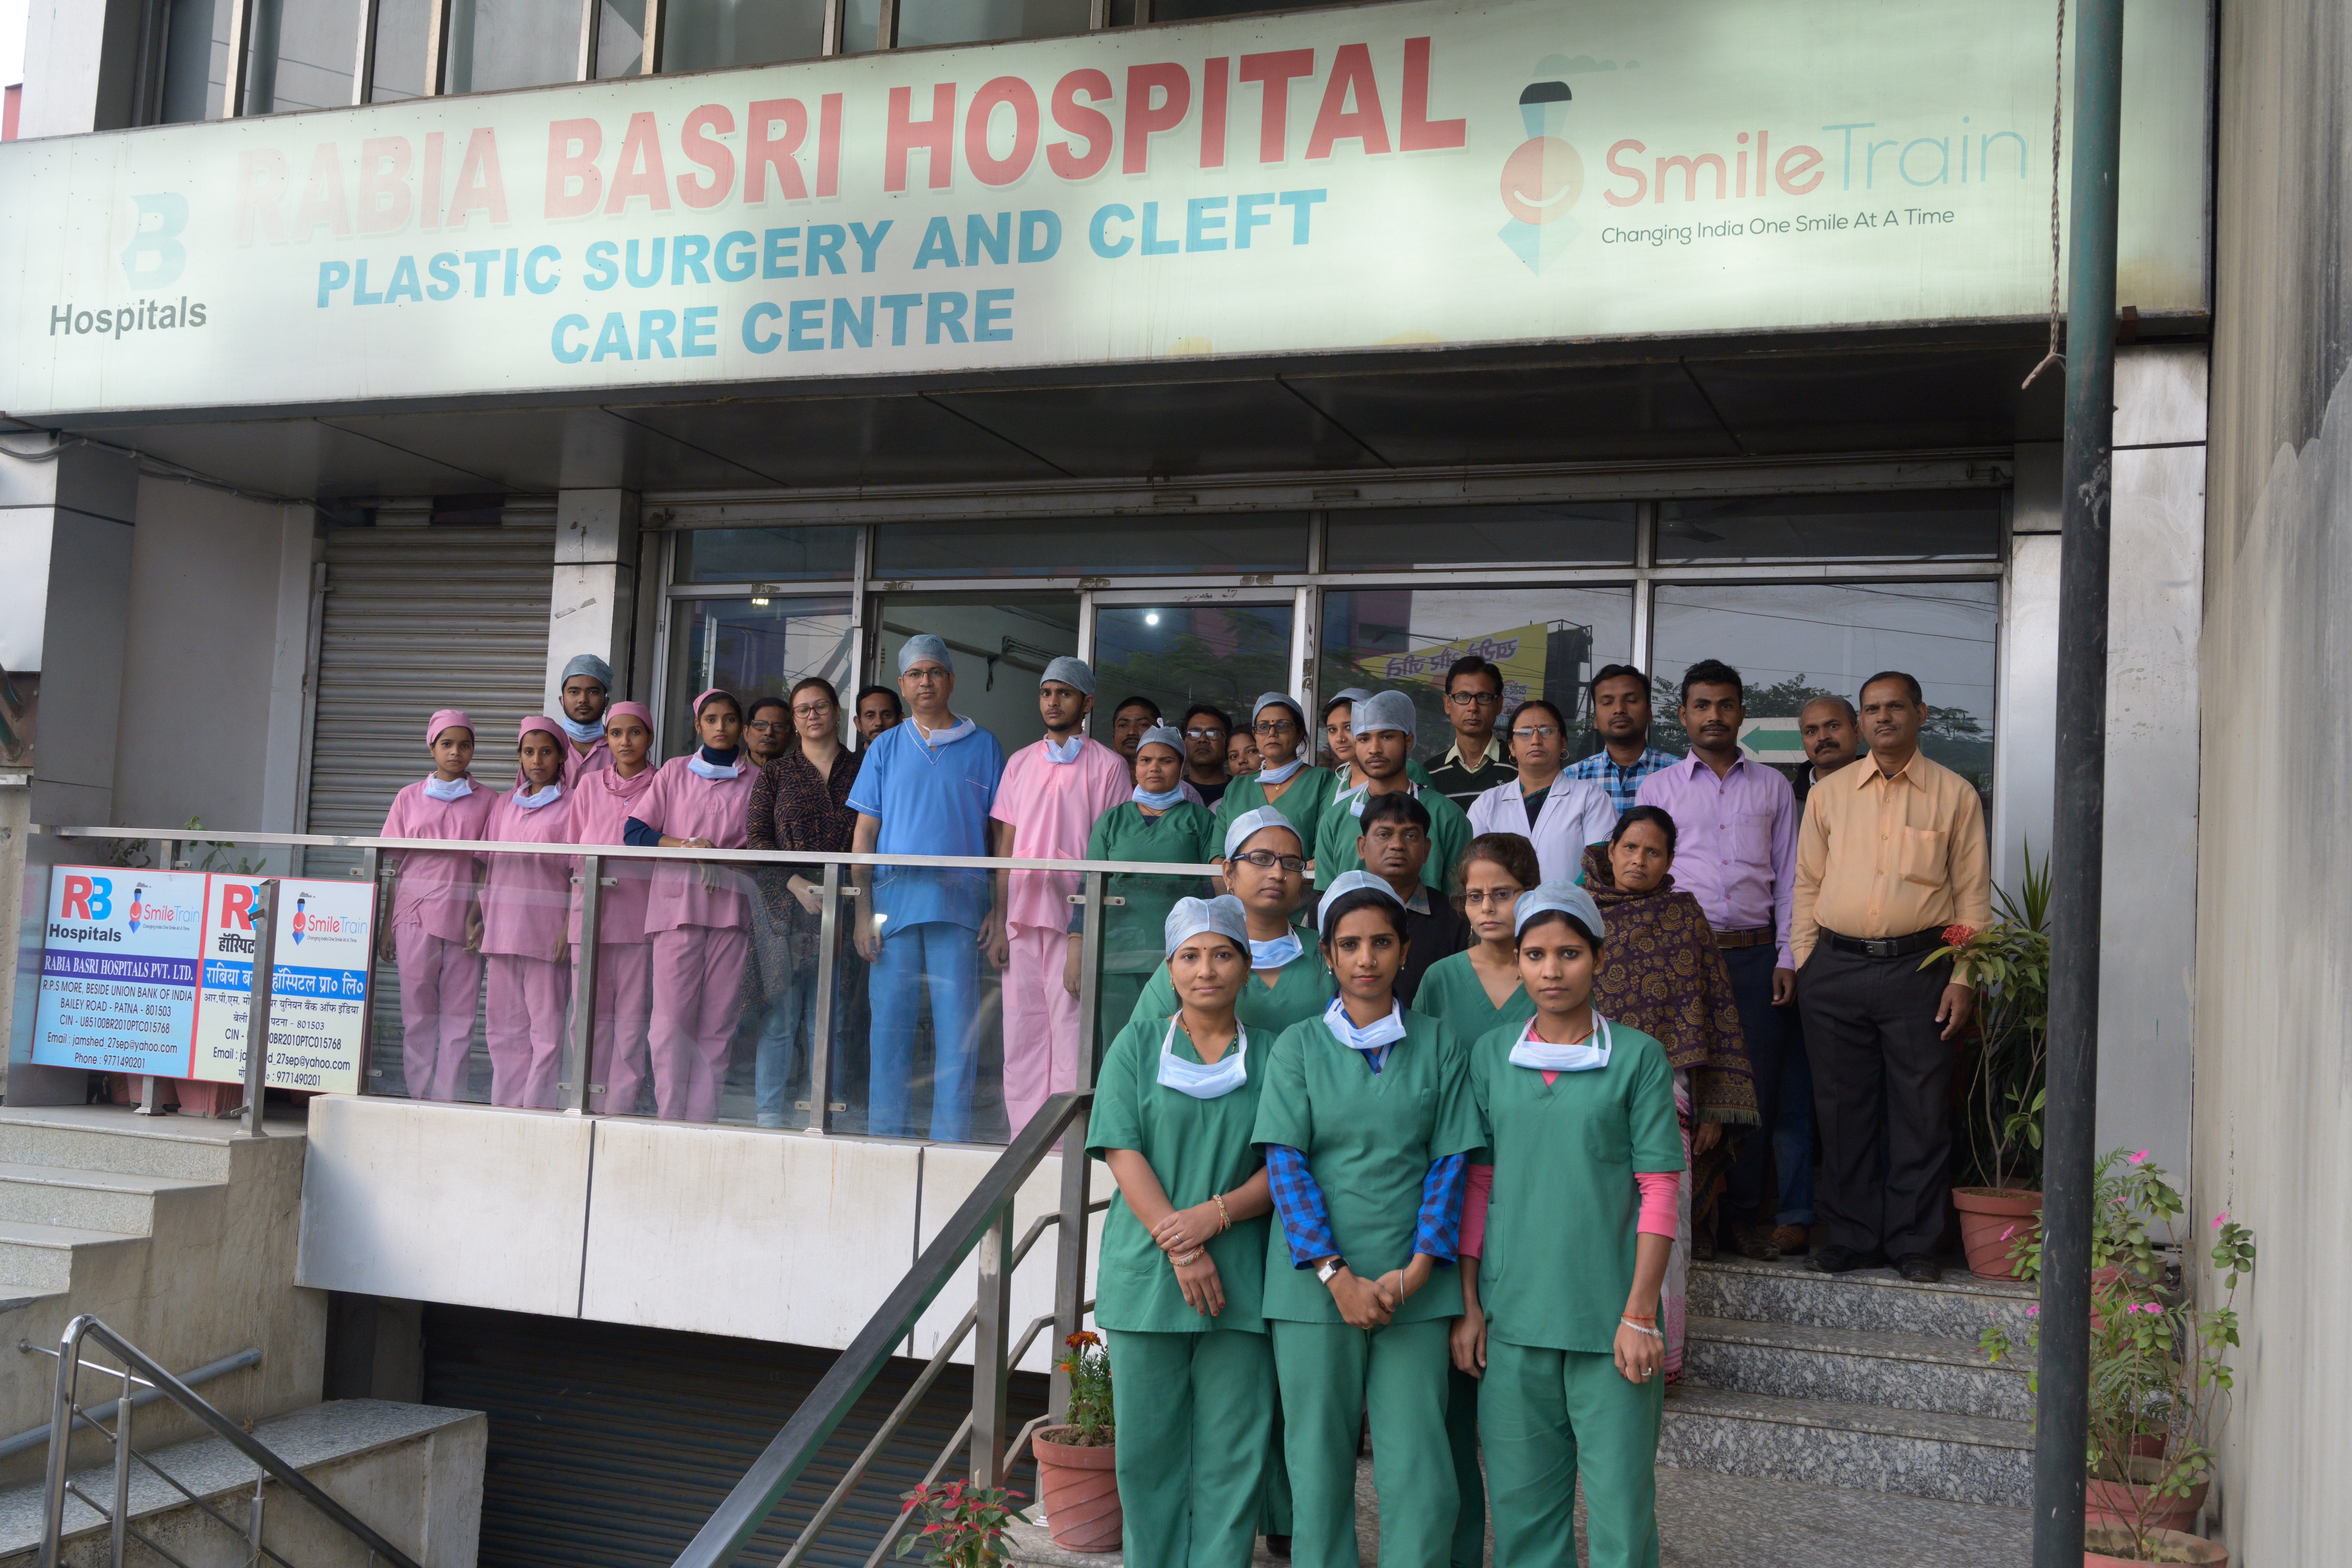 Krankenschwestern und Mitarbeiter vor dem Rabia Basri Plastic Surgery and Cleft Care Center